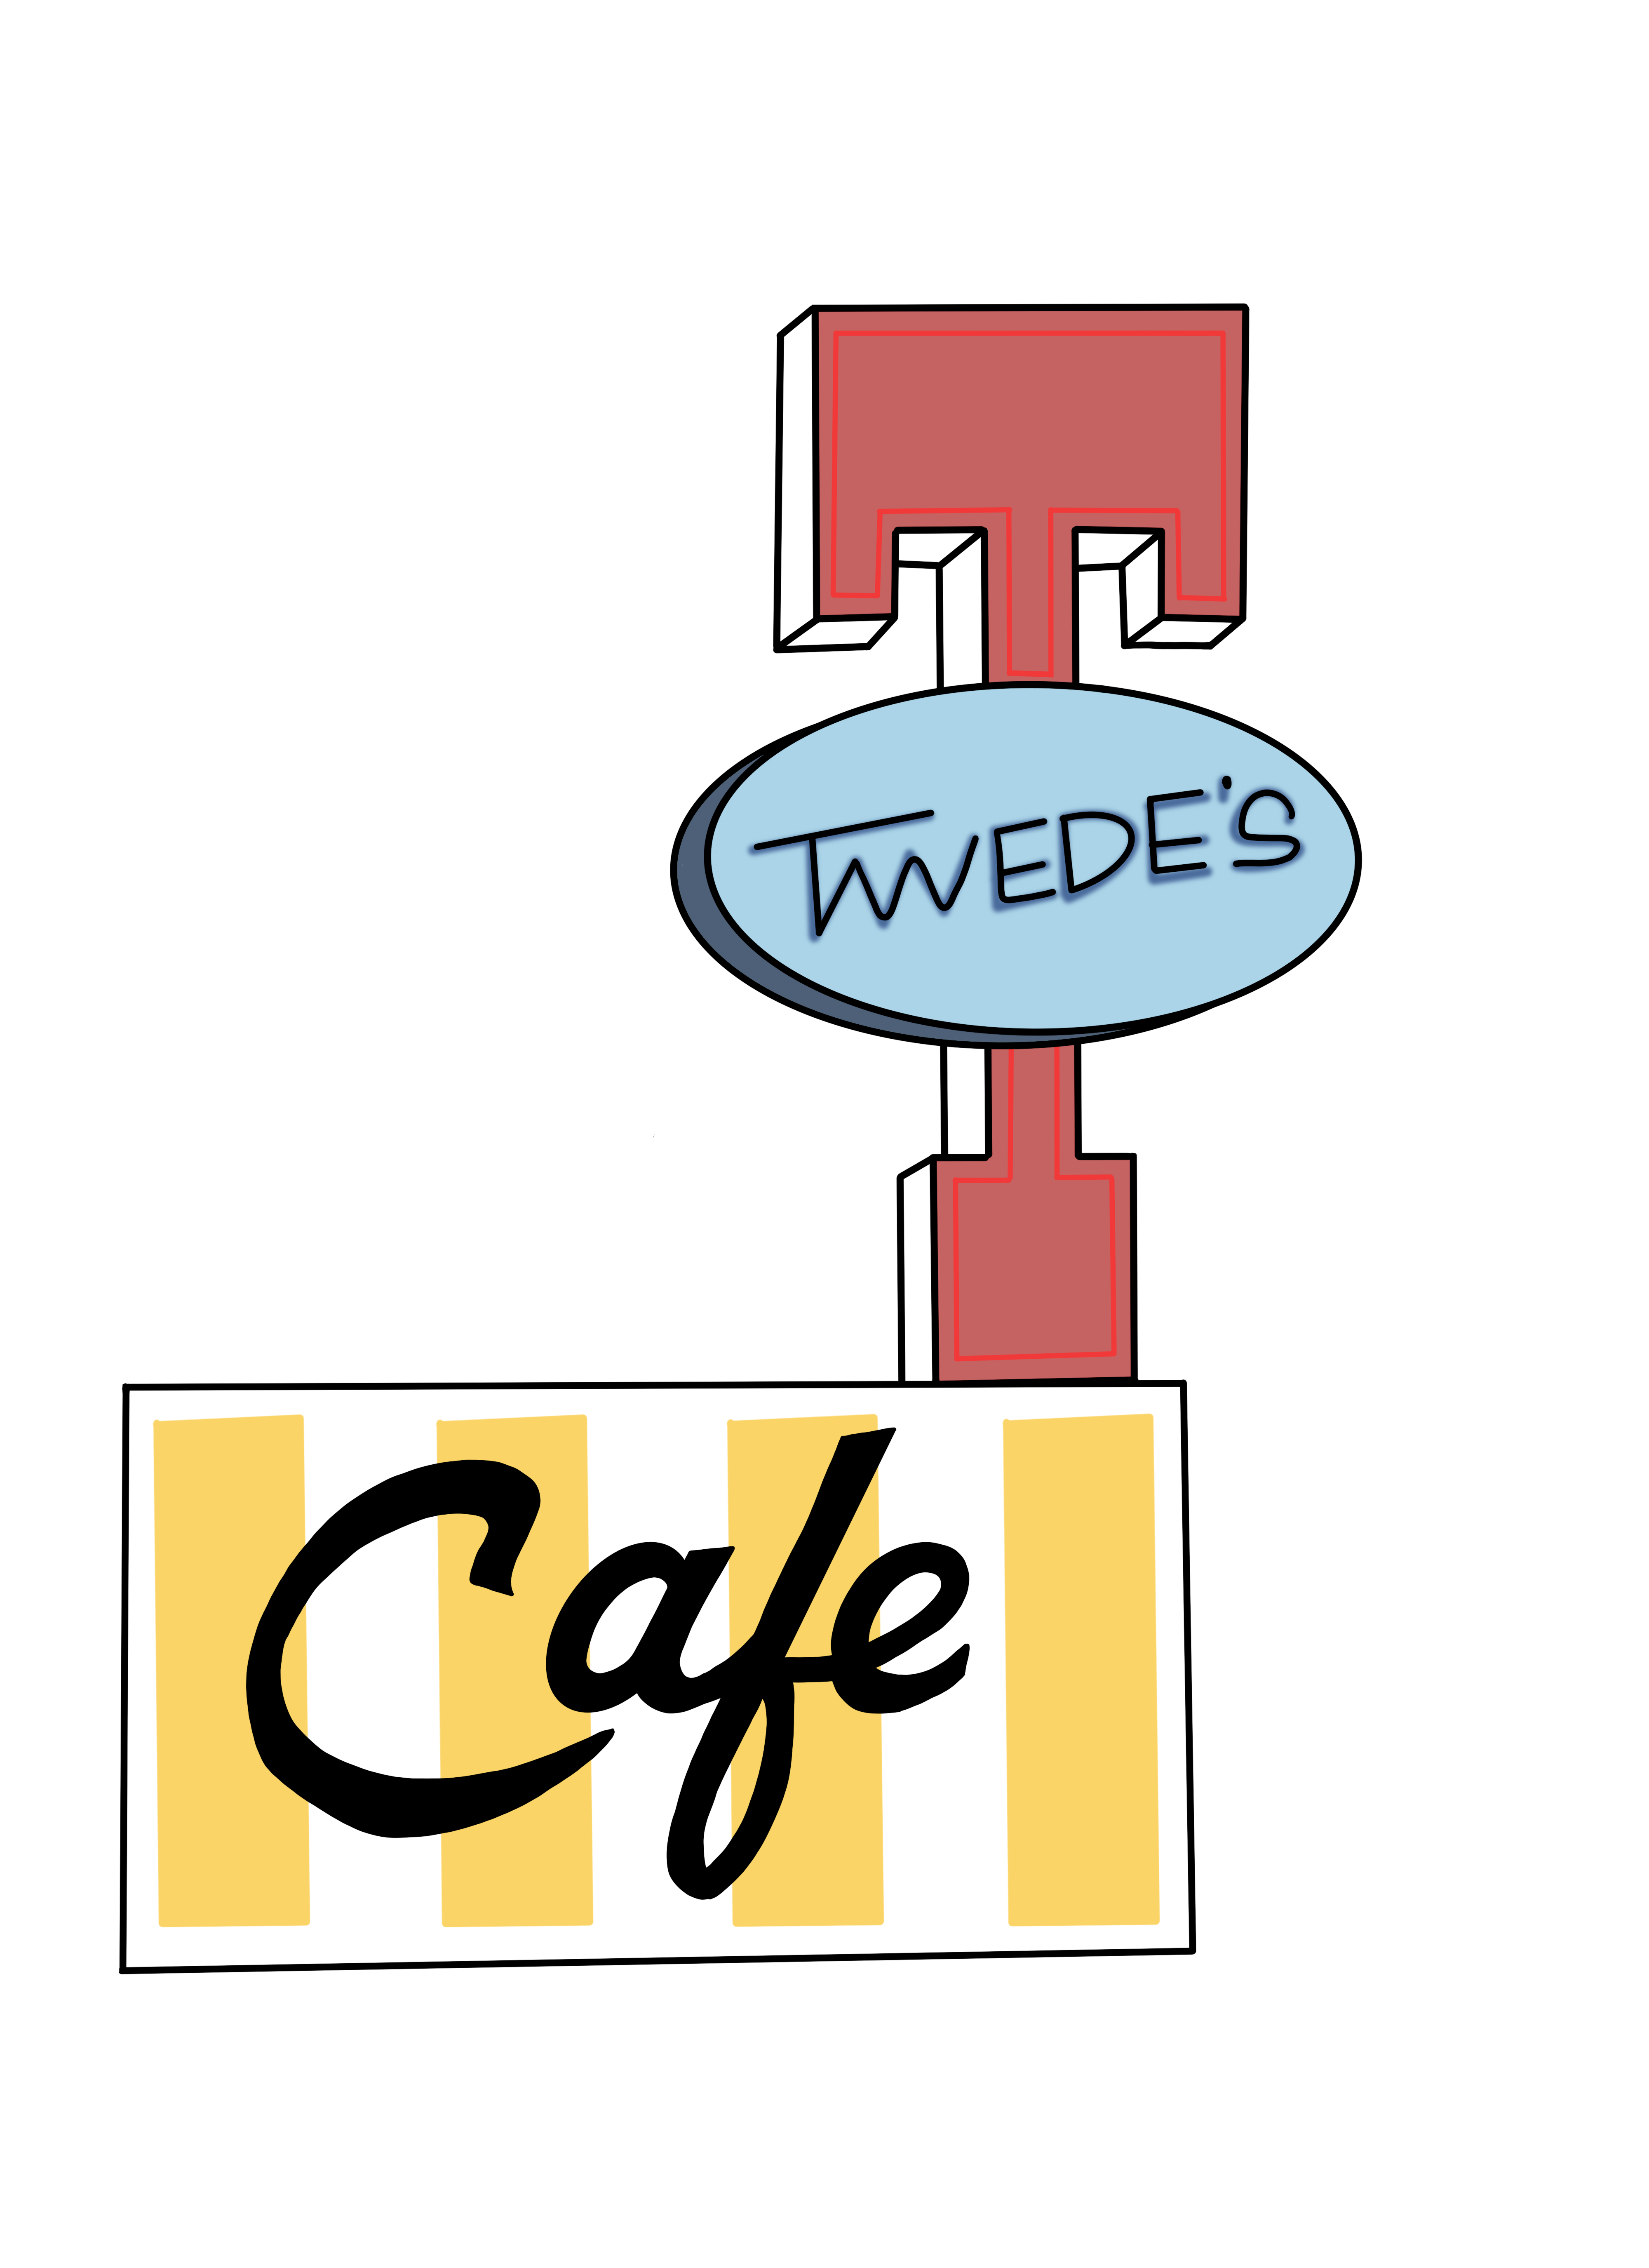 Twedes Cafe logo